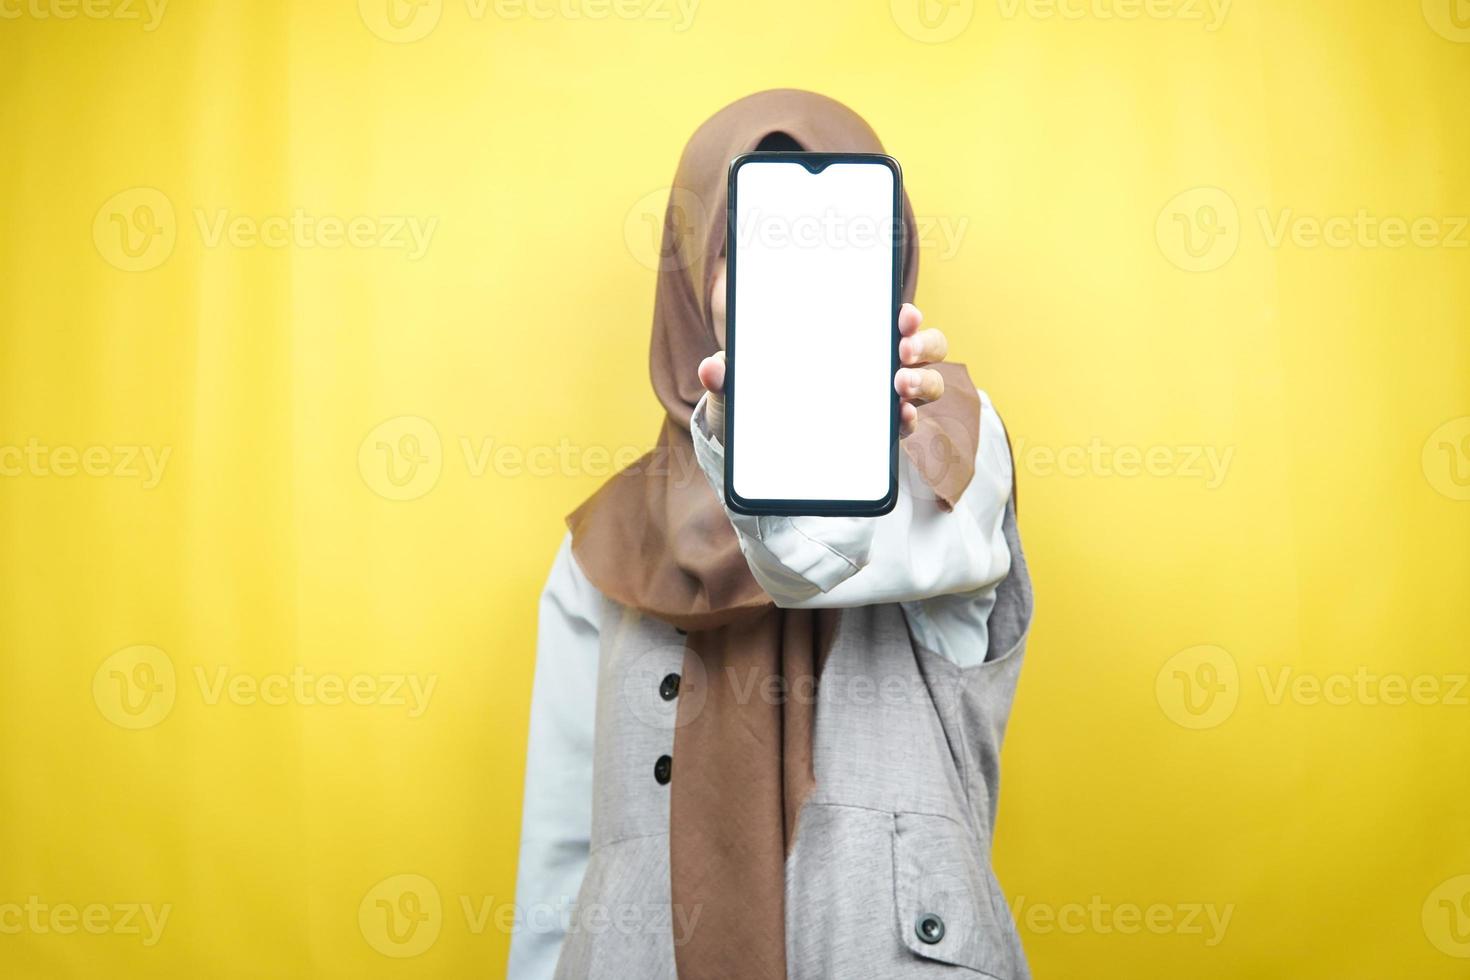 donna musulmana con le mani che tengono smartphone, promozione di app, promozione di qualcosa, isolata su sfondo giallo, concetto pubblicitario foto